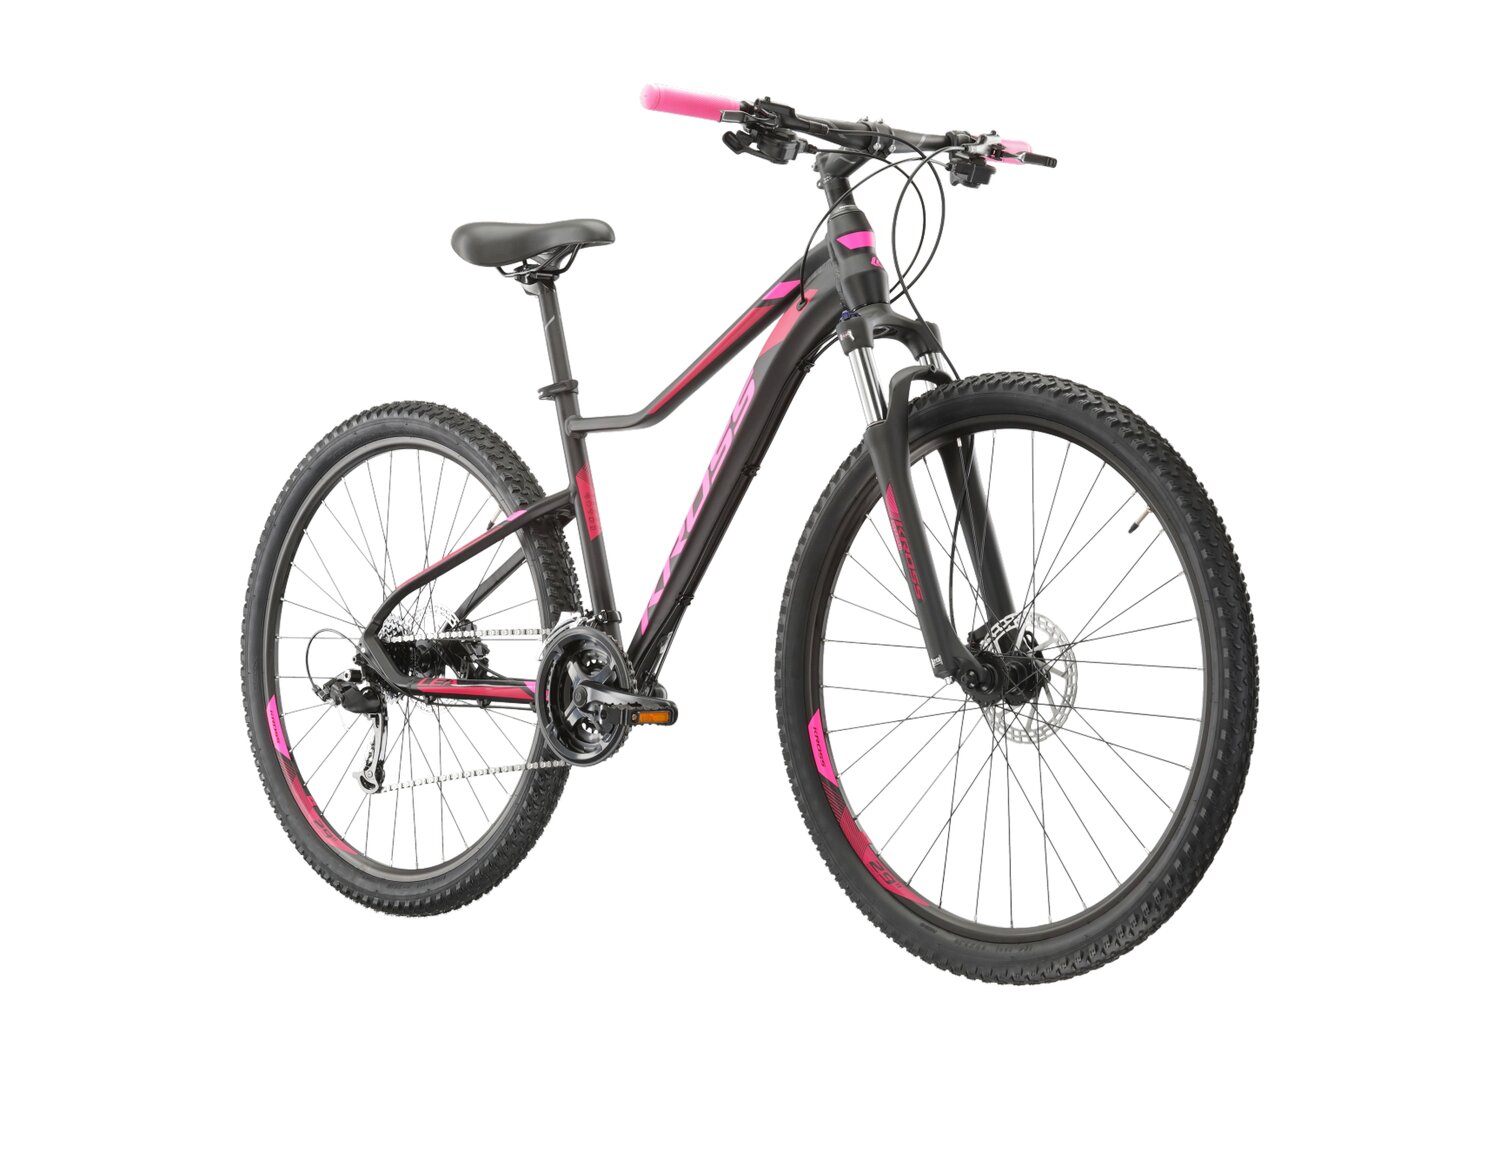 Damski rower górski MTB Woman Kross Lea 6.0 MS na aluminiowej ramie w kolorze czarnym wyposażony w osprzęt Microshift 